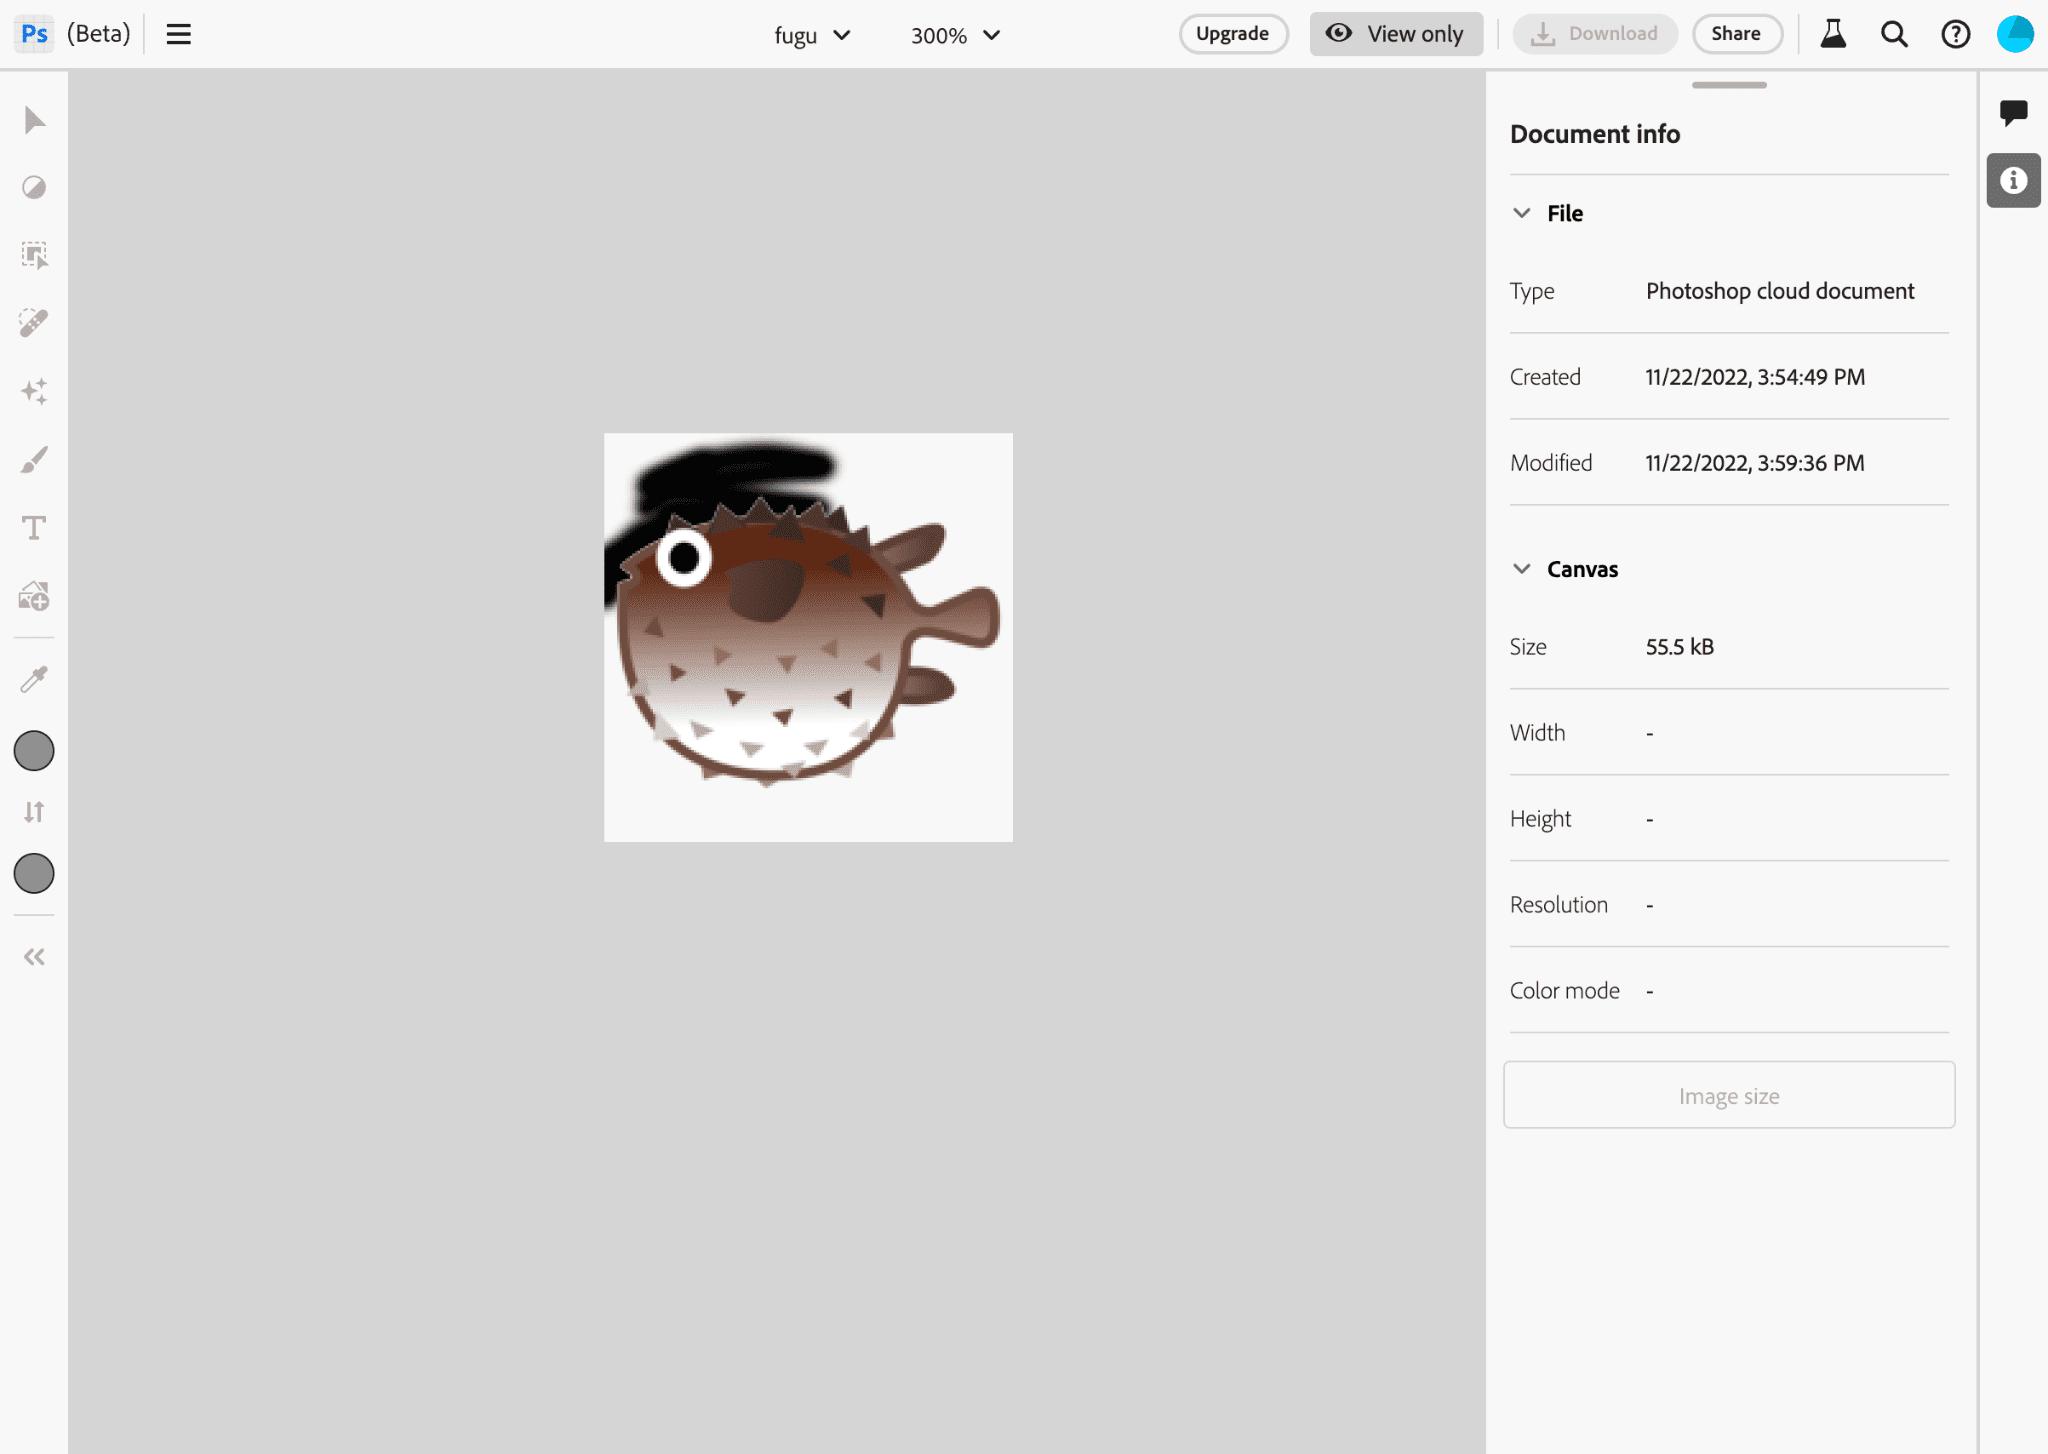 Приложение Photoshop во время редактирования изображения логотипа Project Fugu.